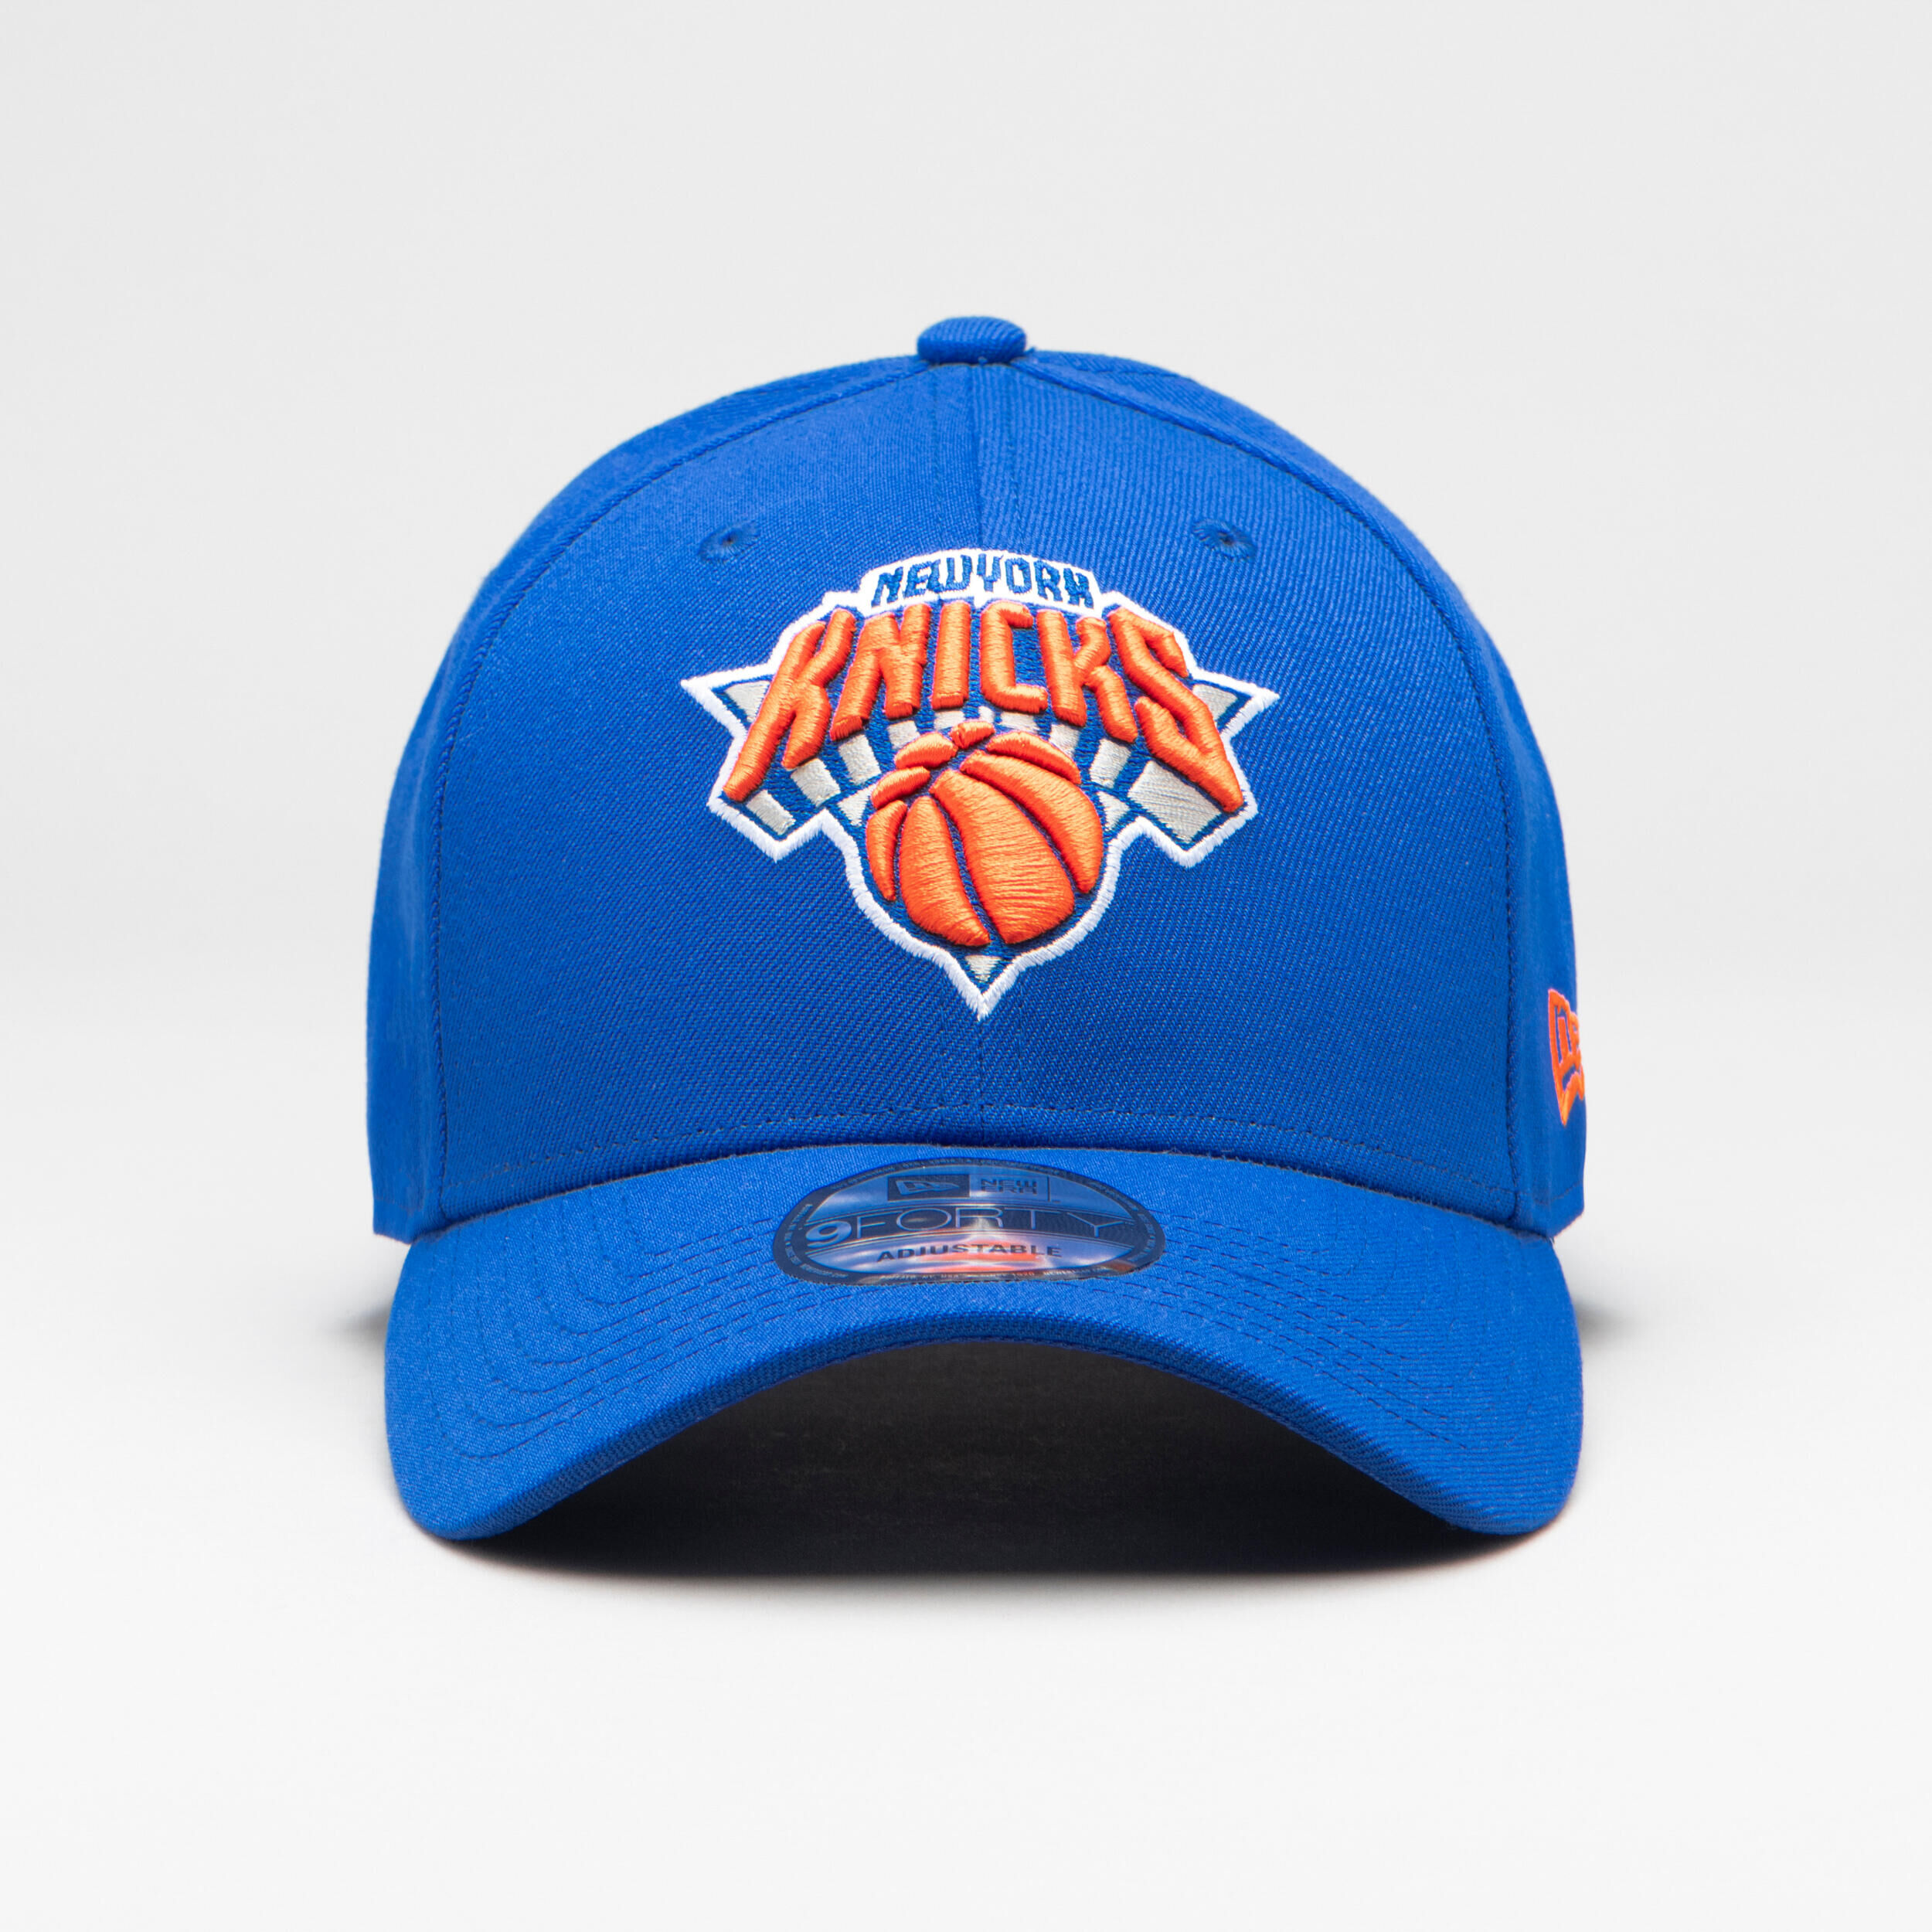 NEW ERA Men's/Women's Basketball Cap NBA - New York Knicks/Blue